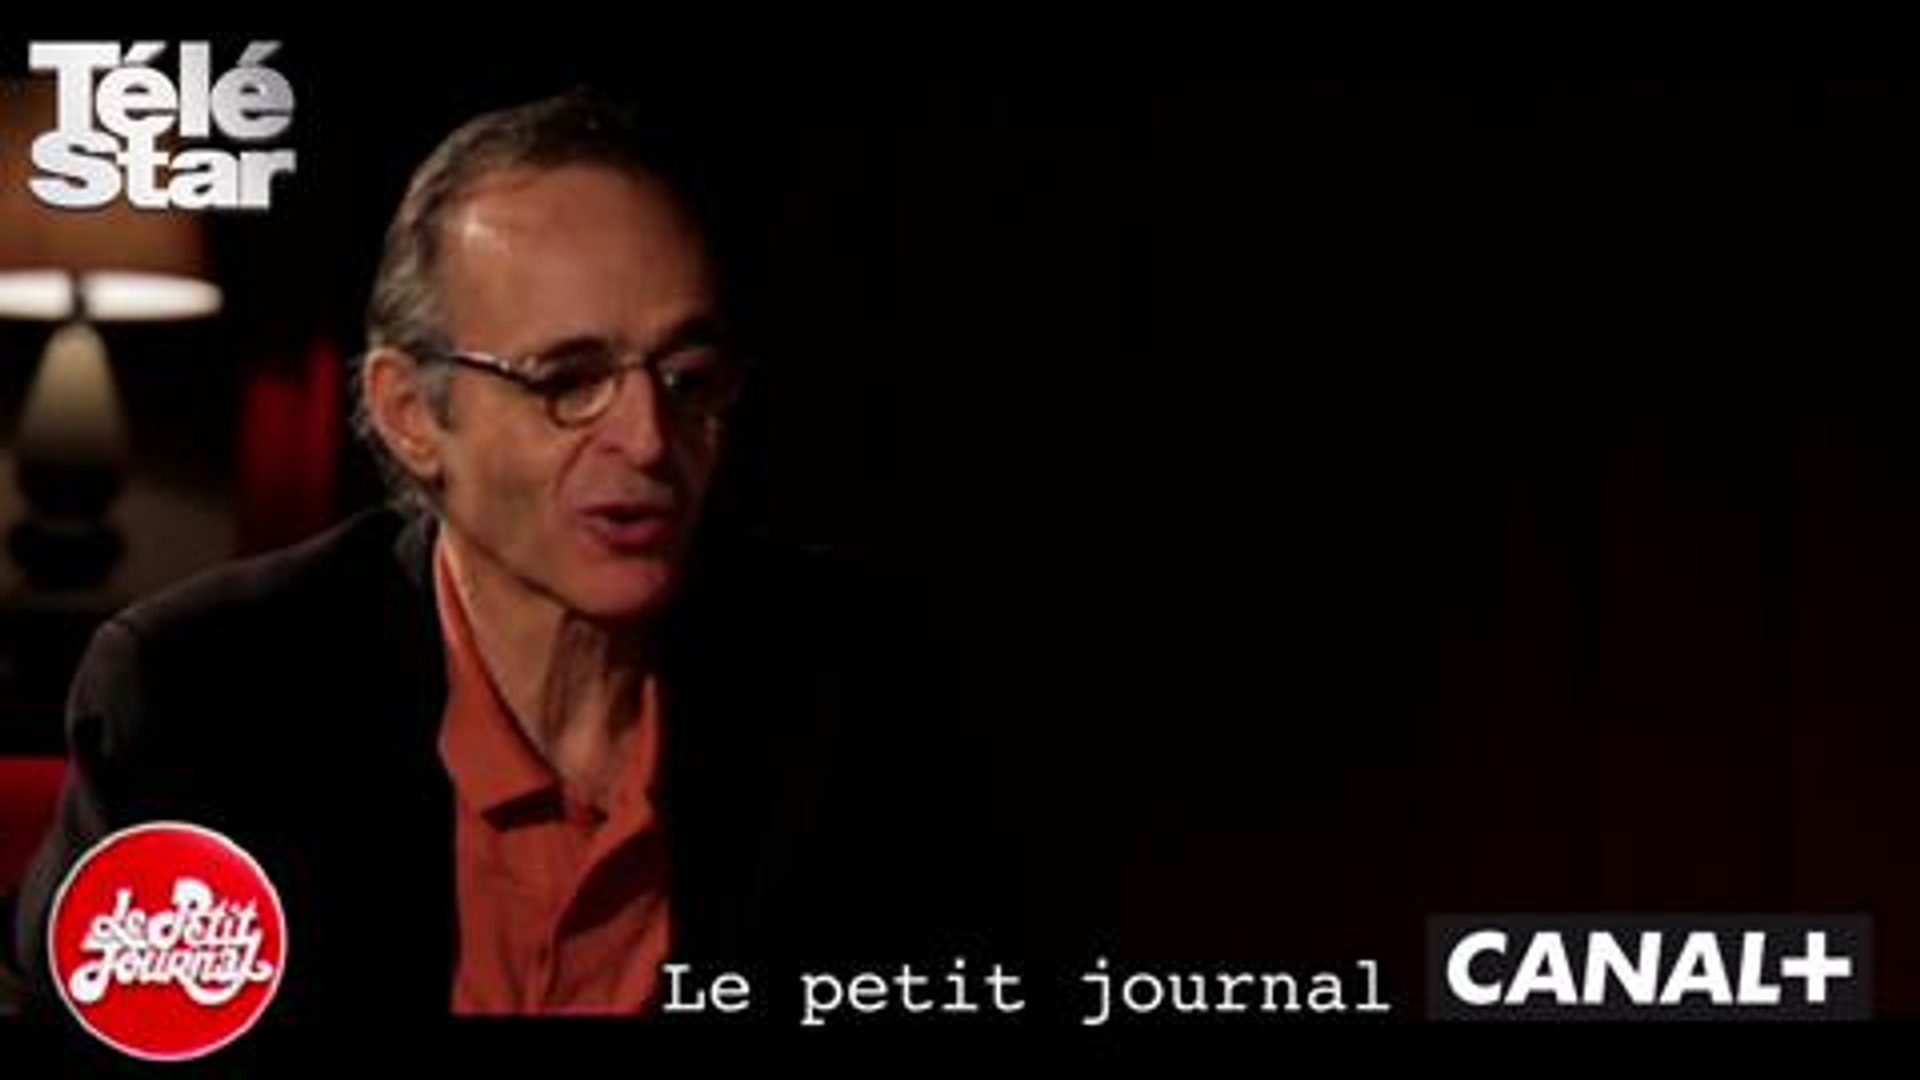 Le petit journal- L'interview de Jean-Jacques Goldman - Mercredi 4 mars  2015 - Vidéo Dailymotion